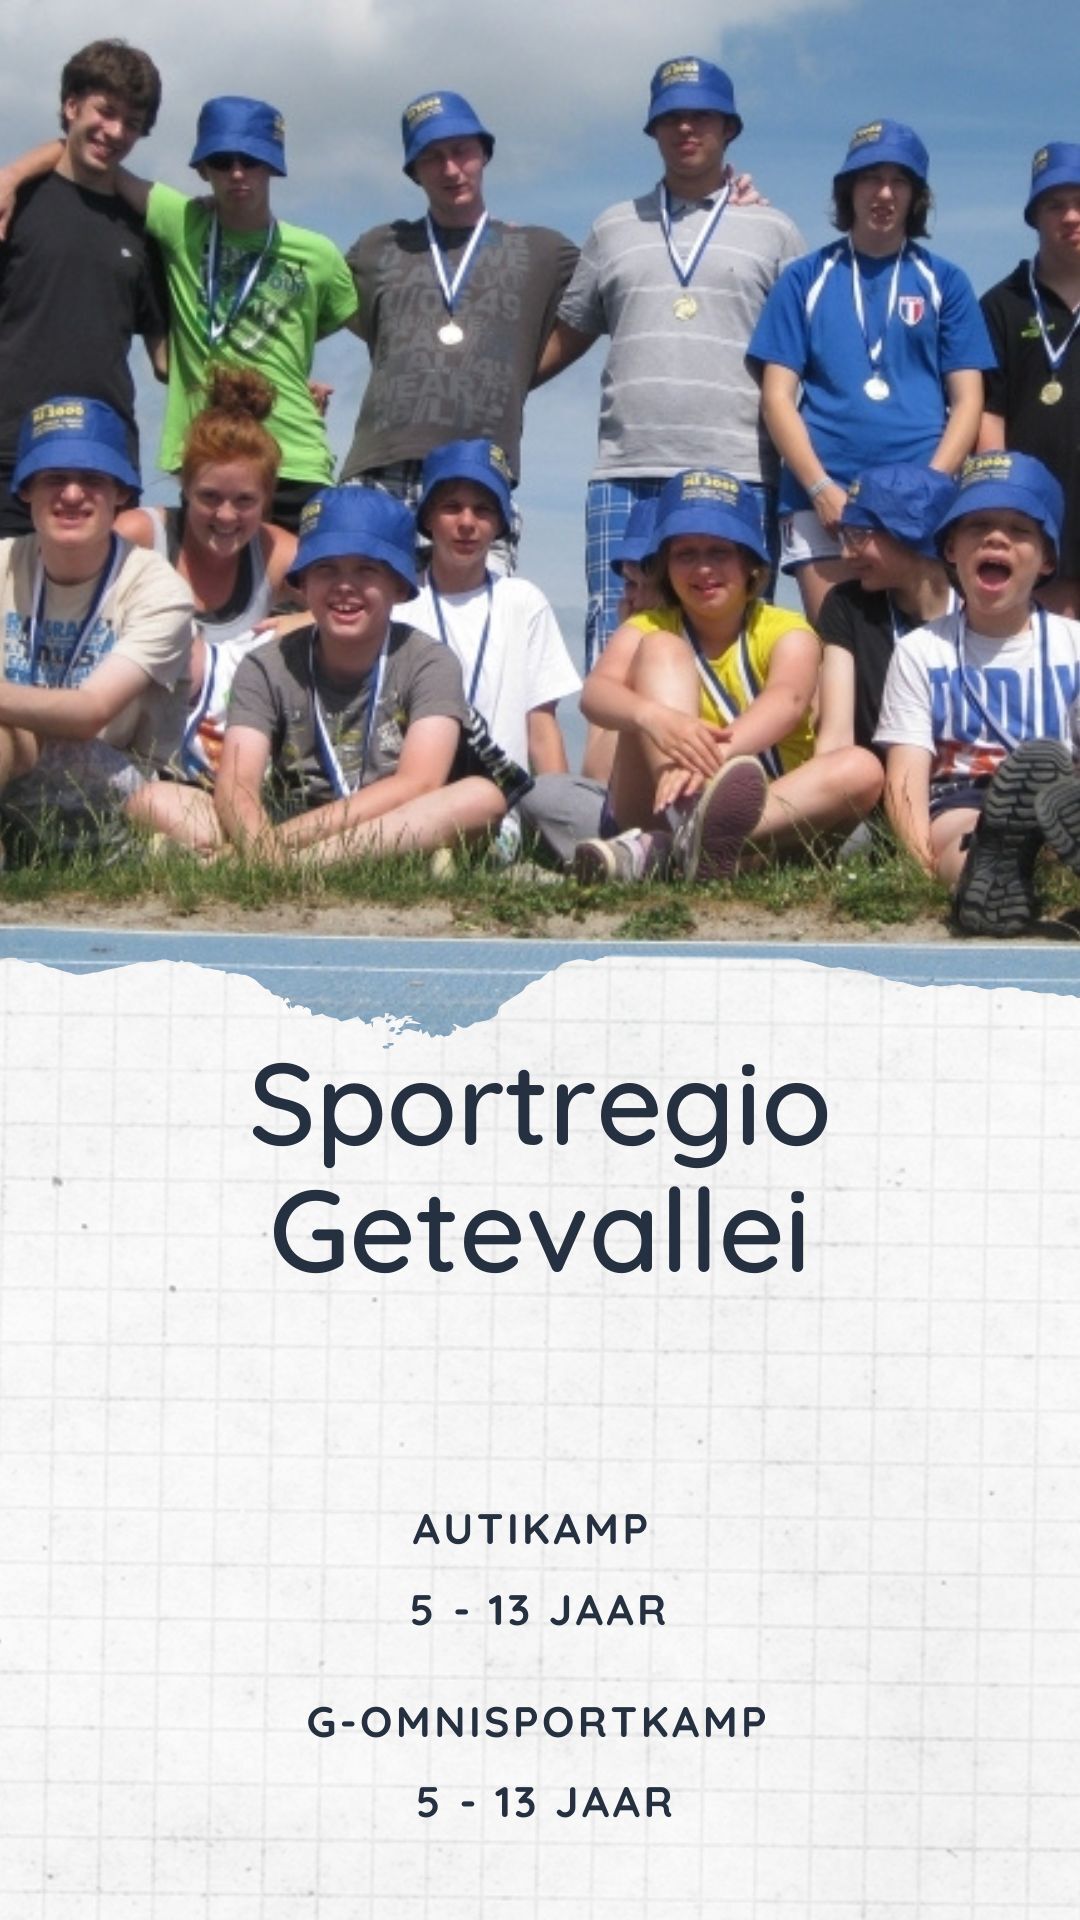 Sportregio Getevallei